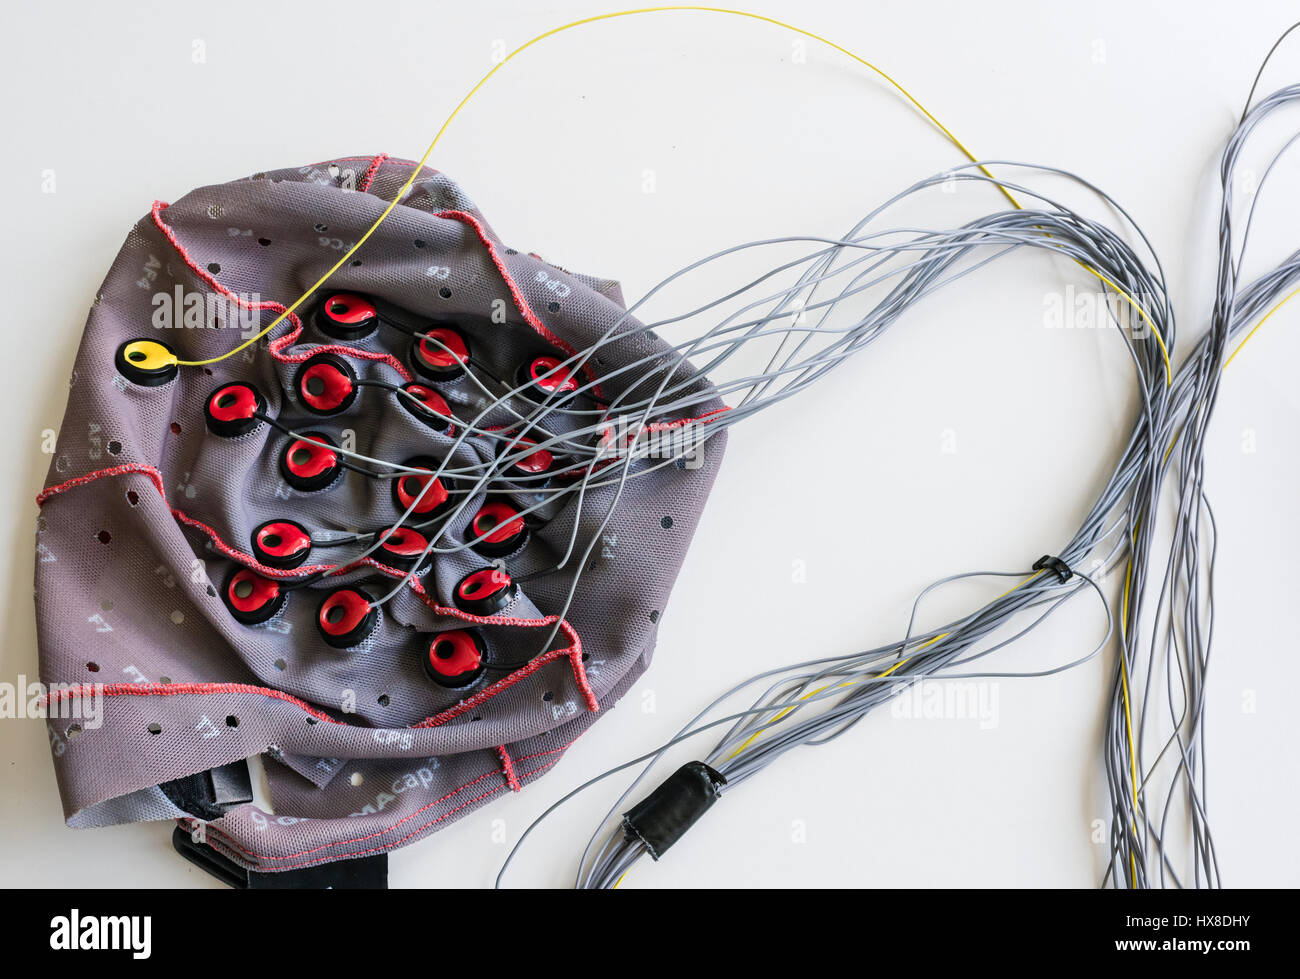 Kabelgebundene Elektroden auf ein Brain-Computer Interface (BCI) Haube, die verwendet wird, um die Aktivität des Gehirns in Signale zu übersetzen, die einen Computer in einem Labor der Neurowissenschaften Steuern Stockfoto